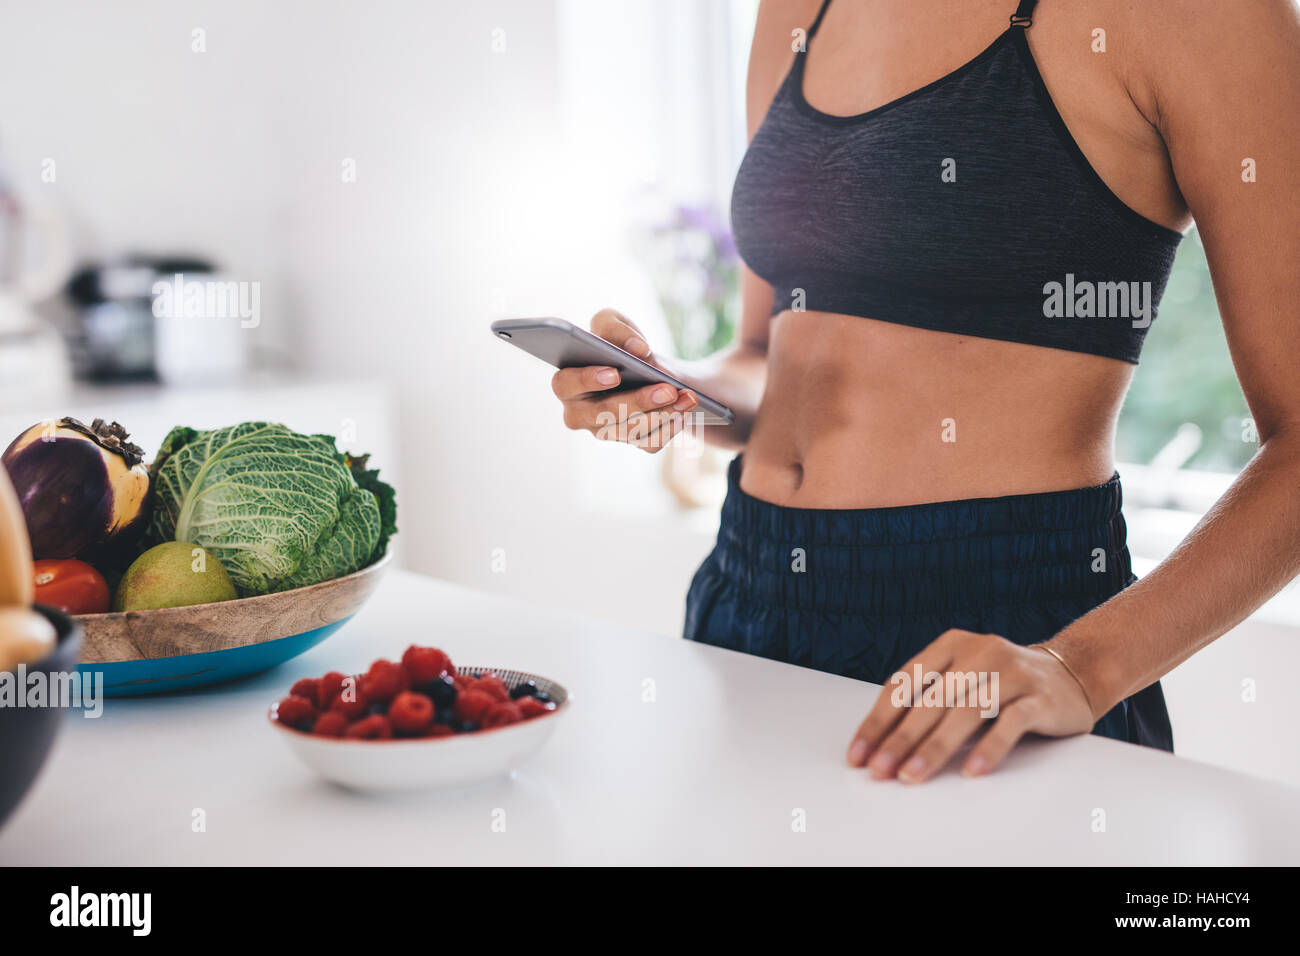 Aufnahme der jungen Frau mit Handy in der Küche mit Obst und Gemüse auf Küchentisch beschnitten. Stockfoto